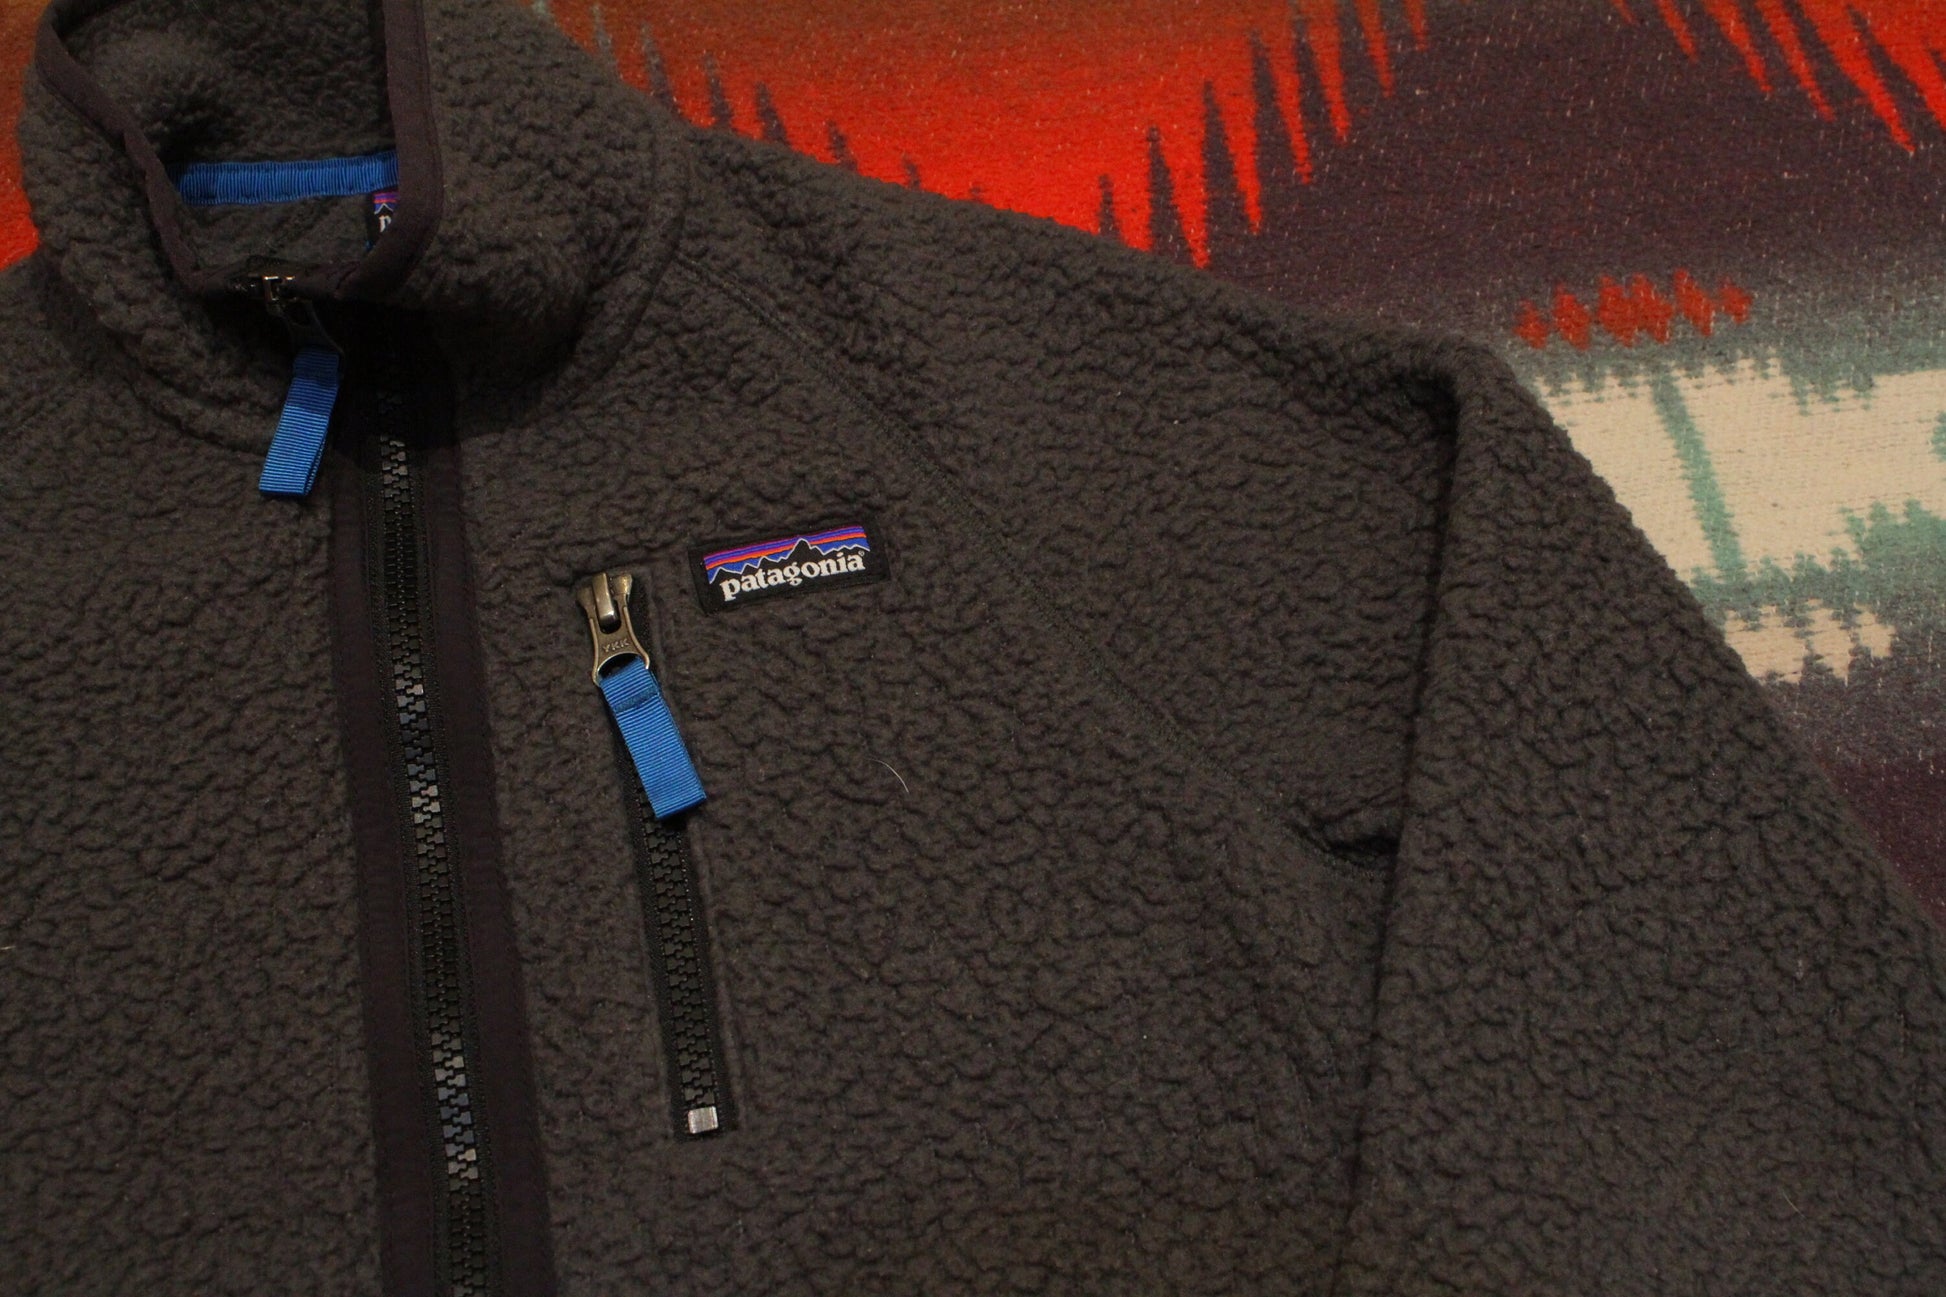 2010s Patagonia 65411 Grey Fleece Zip Up Kid's Jacket